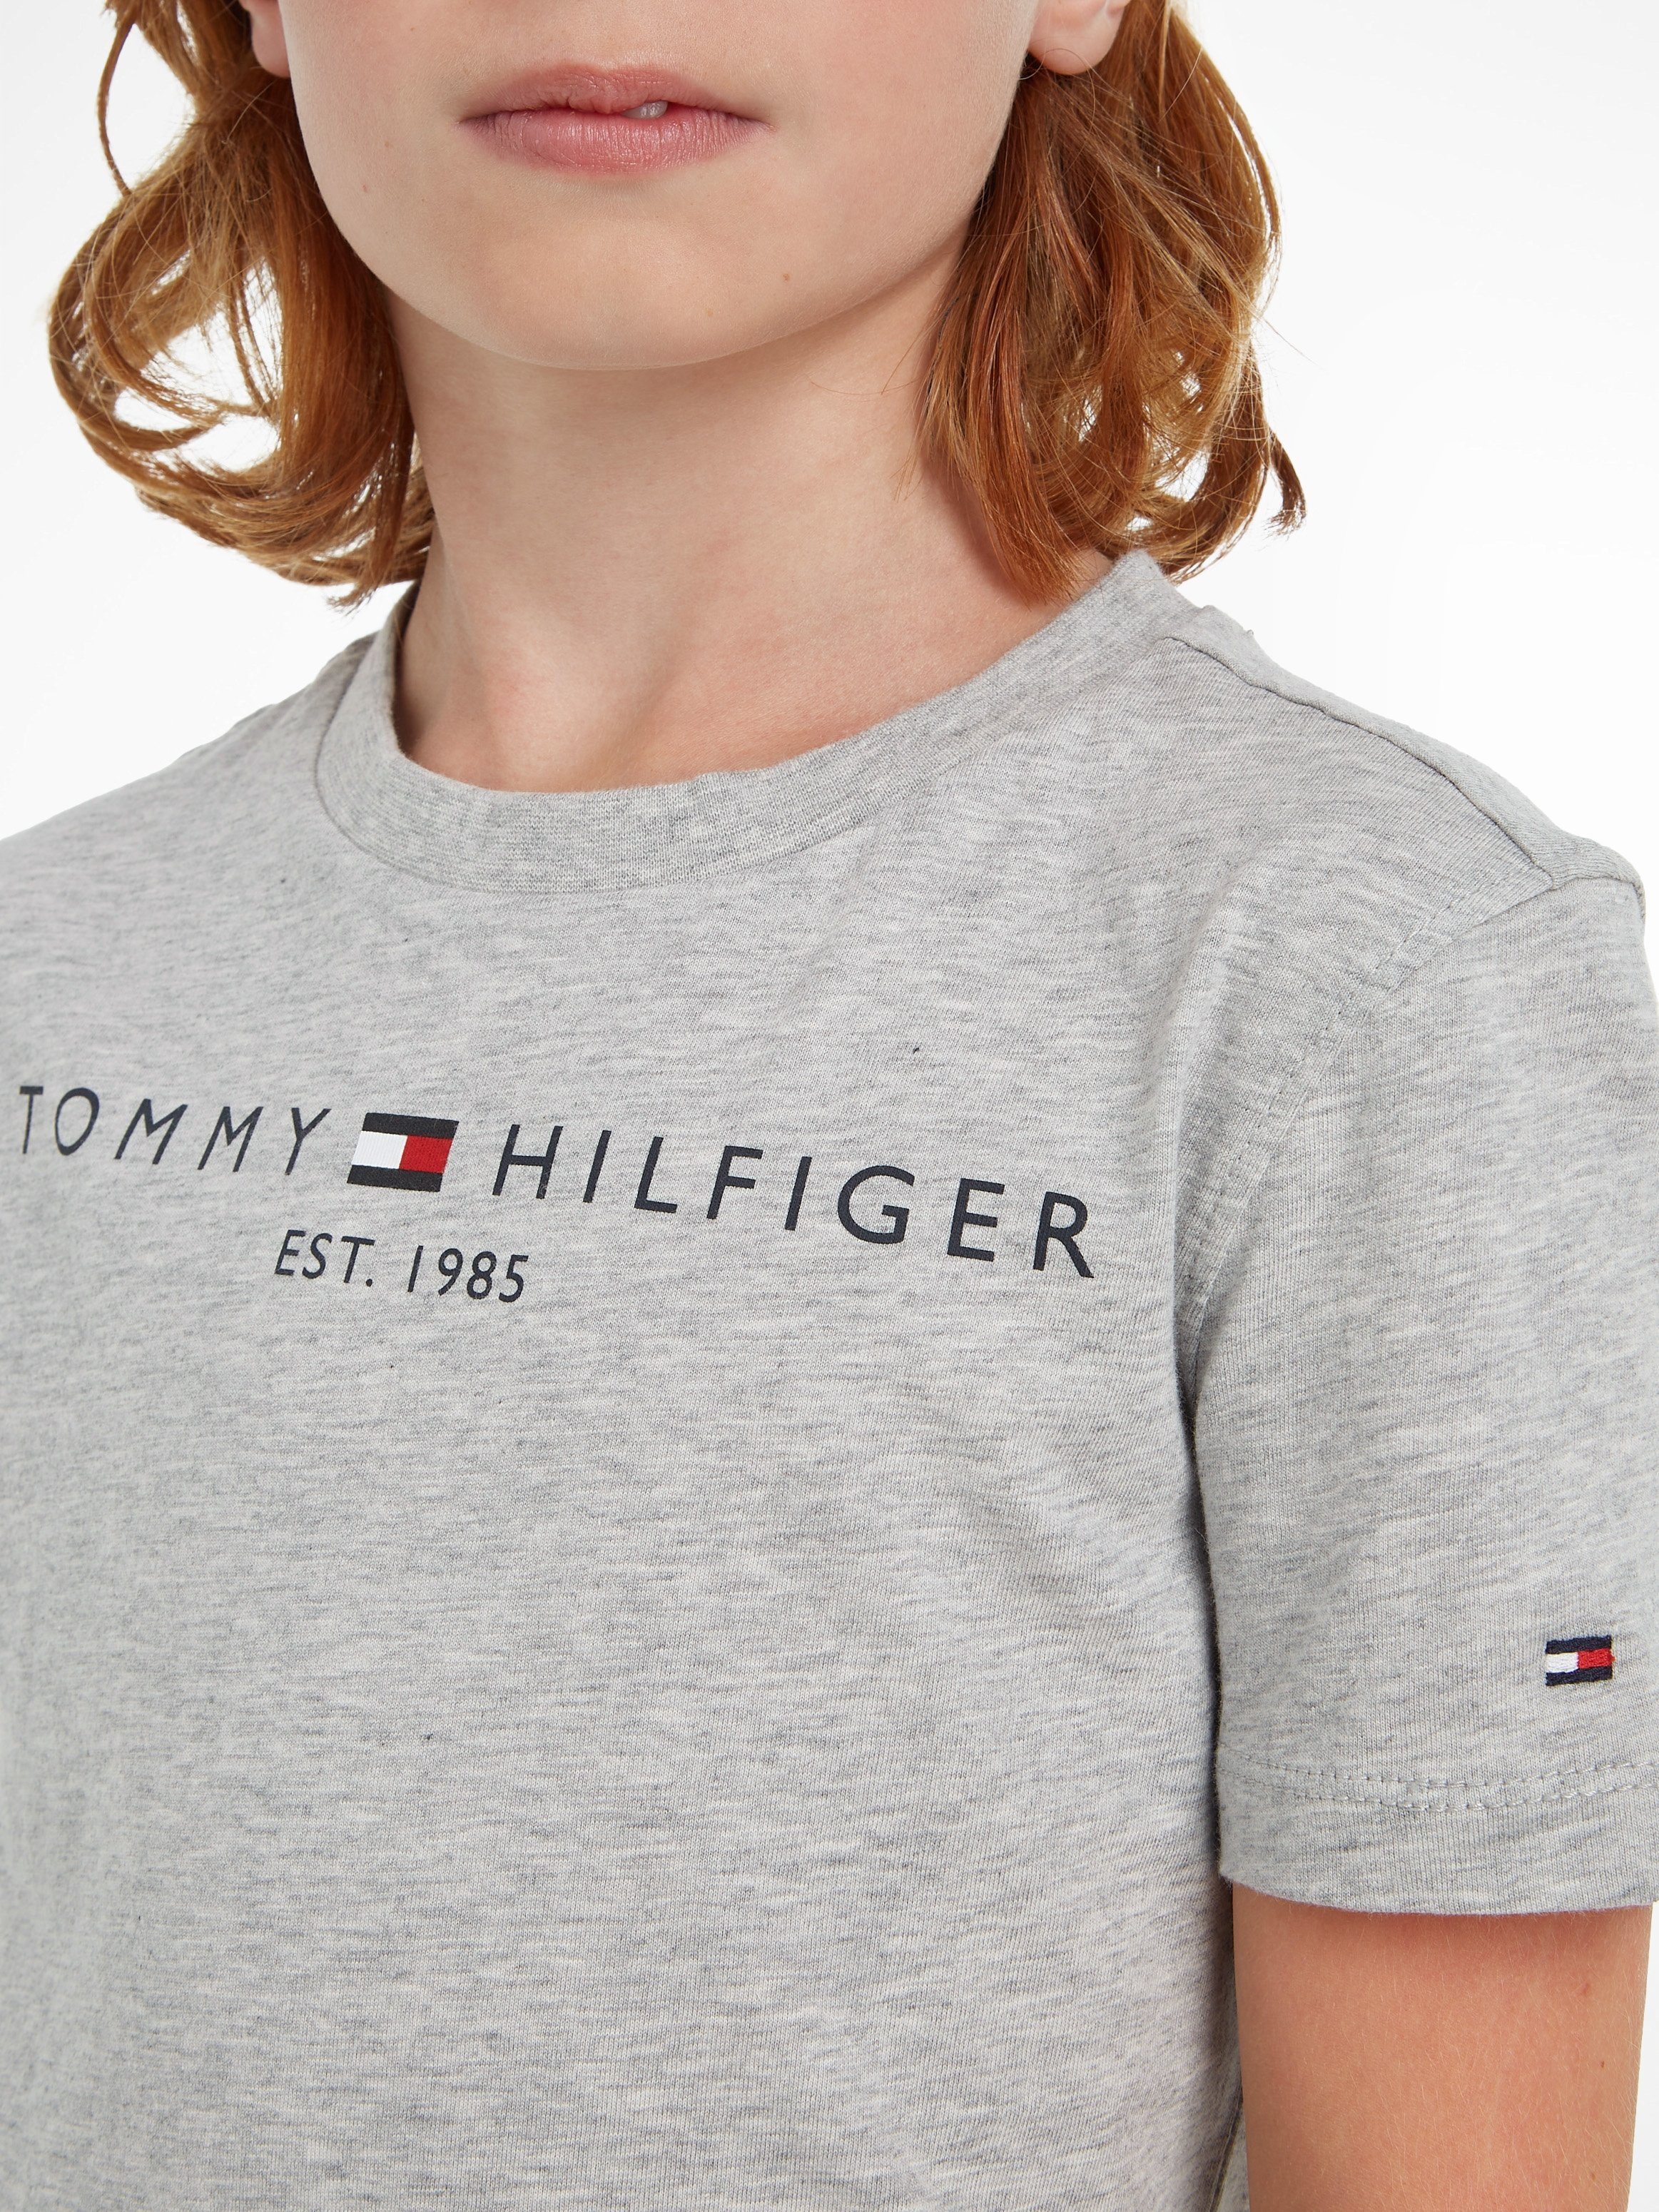 Hilfiger Jungen ESSENTIAL MiniMe,für TEE Junior Mädchen Kids T-Shirt und Kinder Tommy